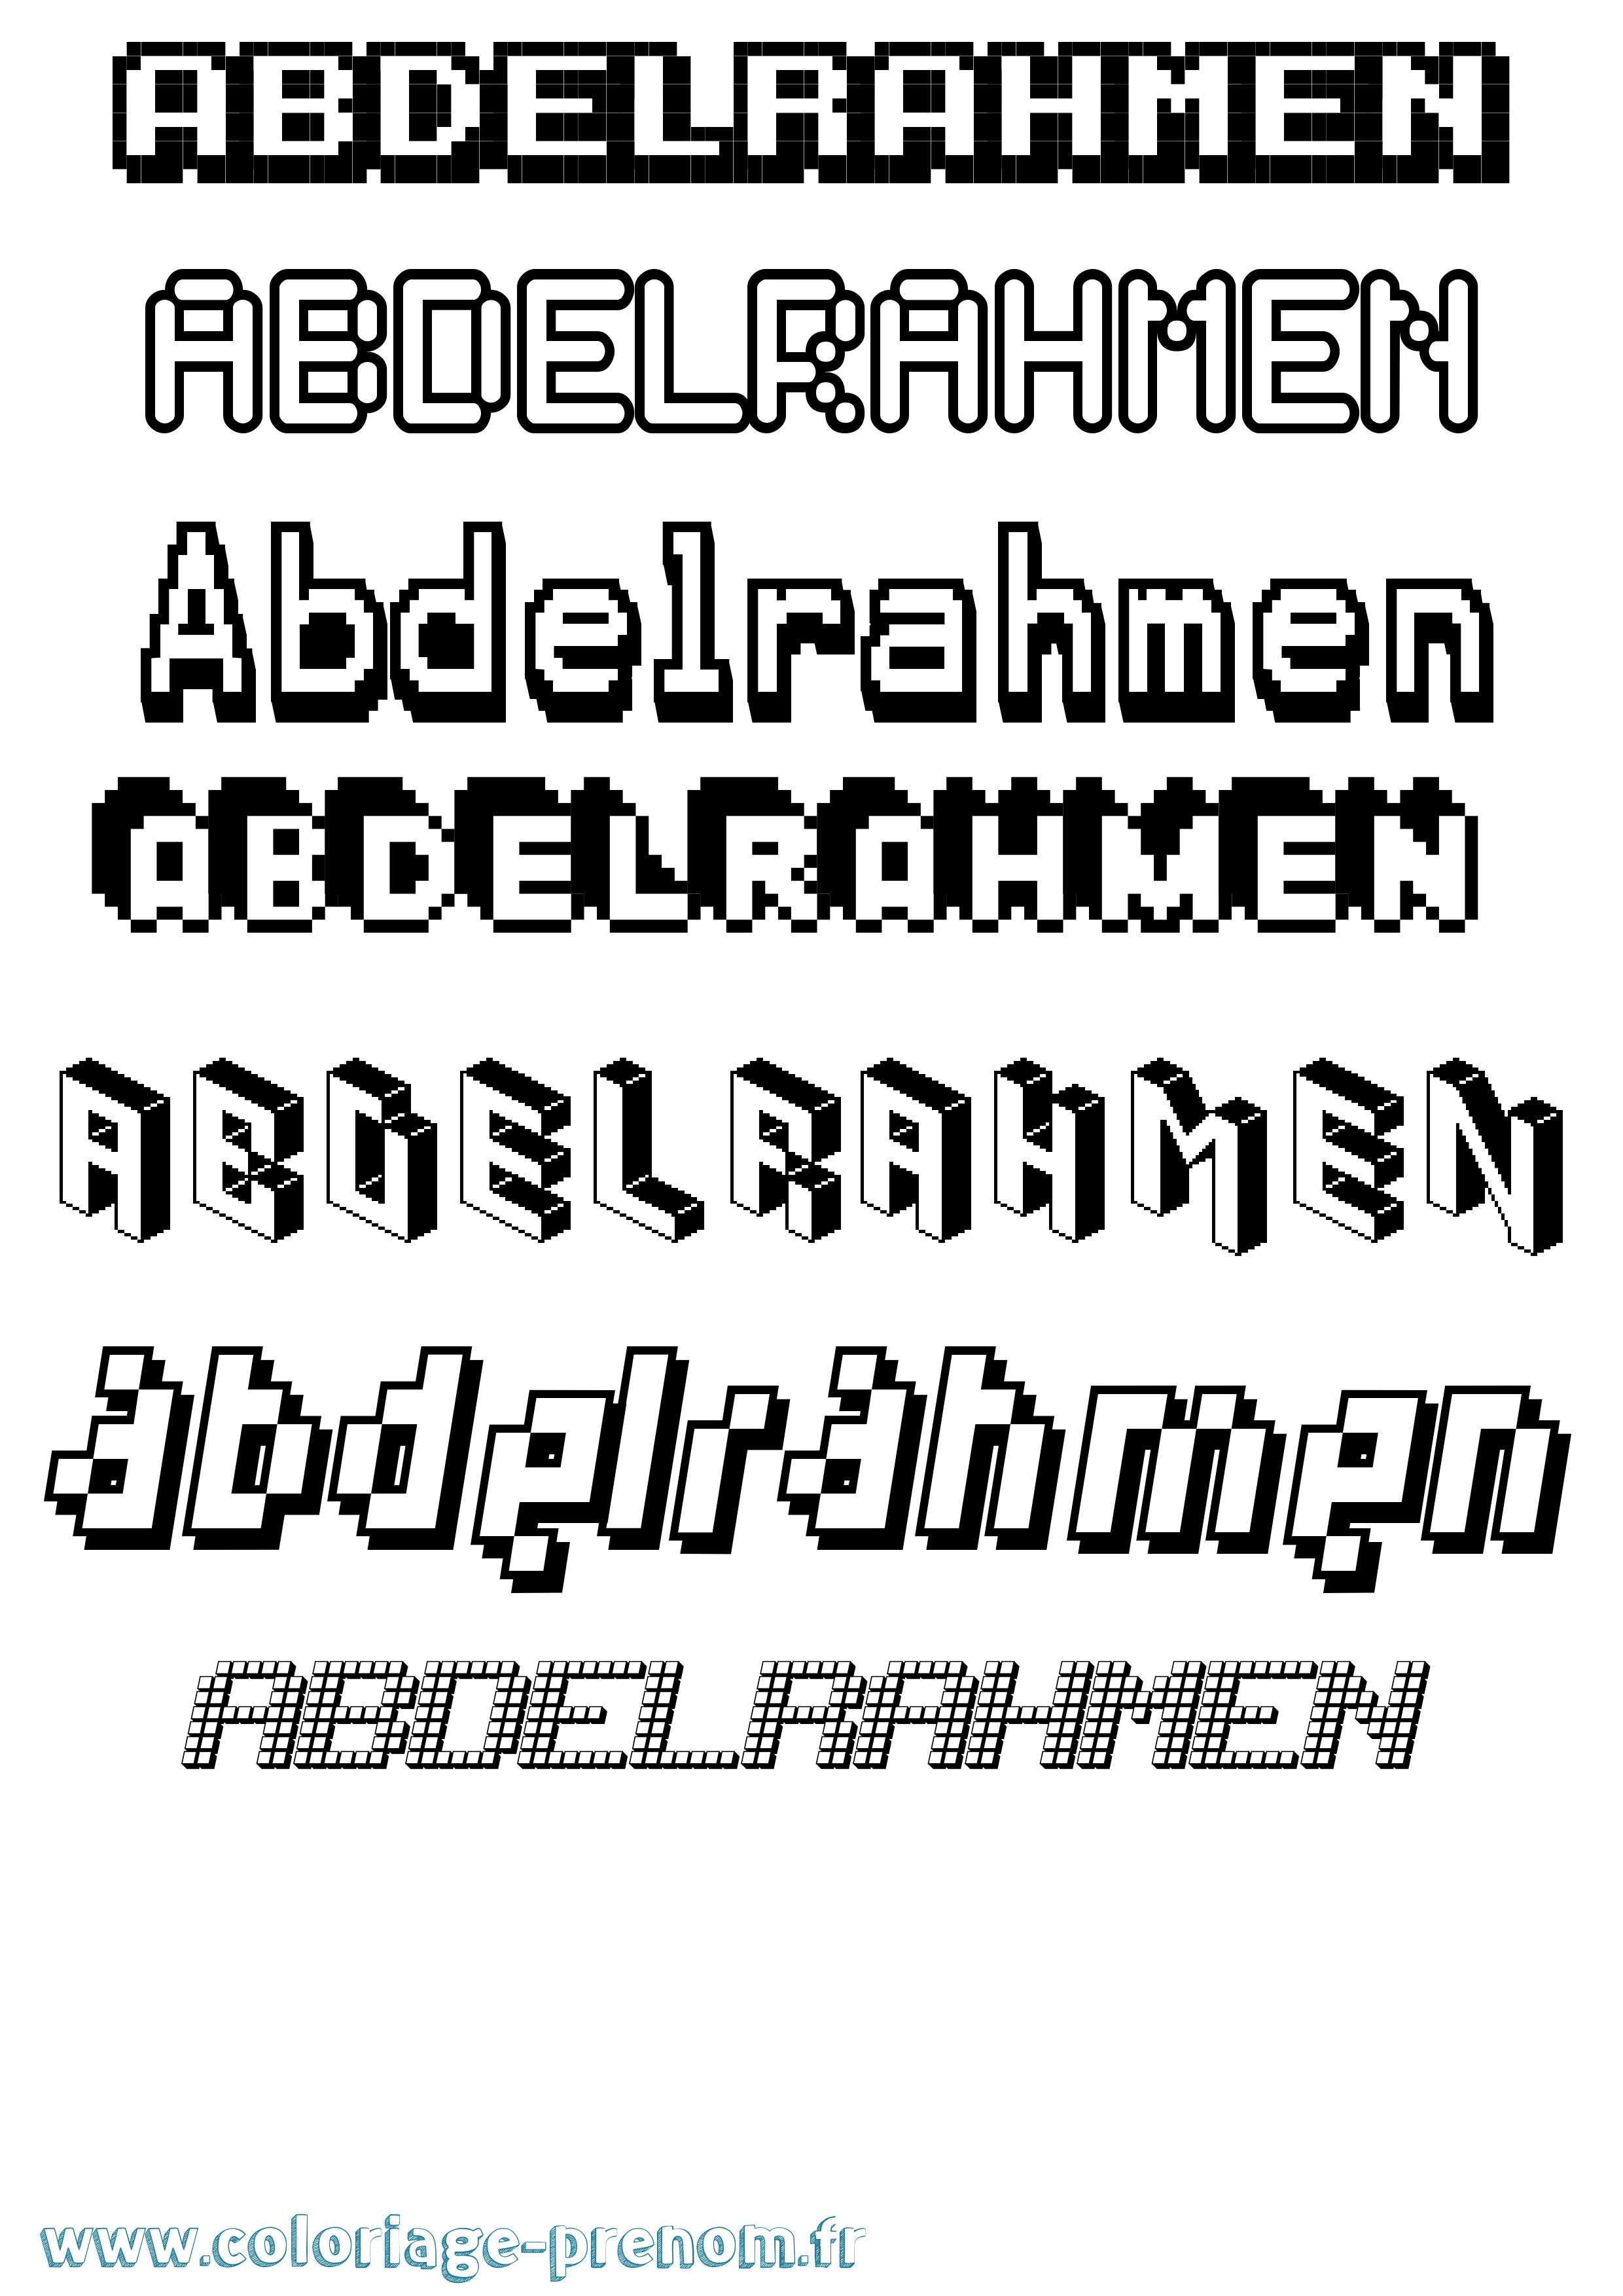 Coloriage prénom Abdelrahmen Pixel